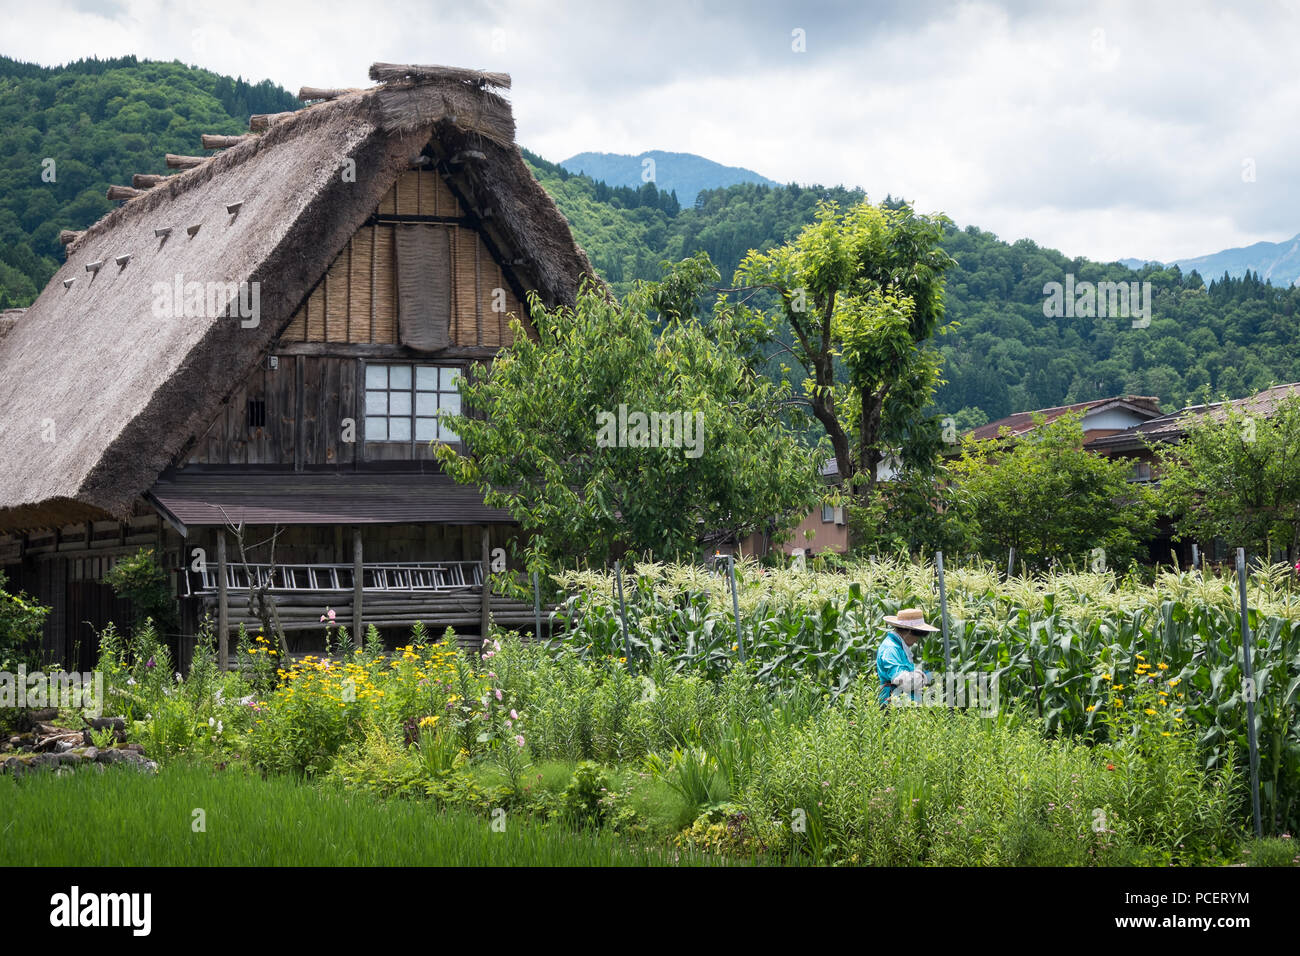 Le village historique de Shirakawa-go, site du patrimoine mondial de l'UNESCO, dans le centre du Japon Banque D'Images